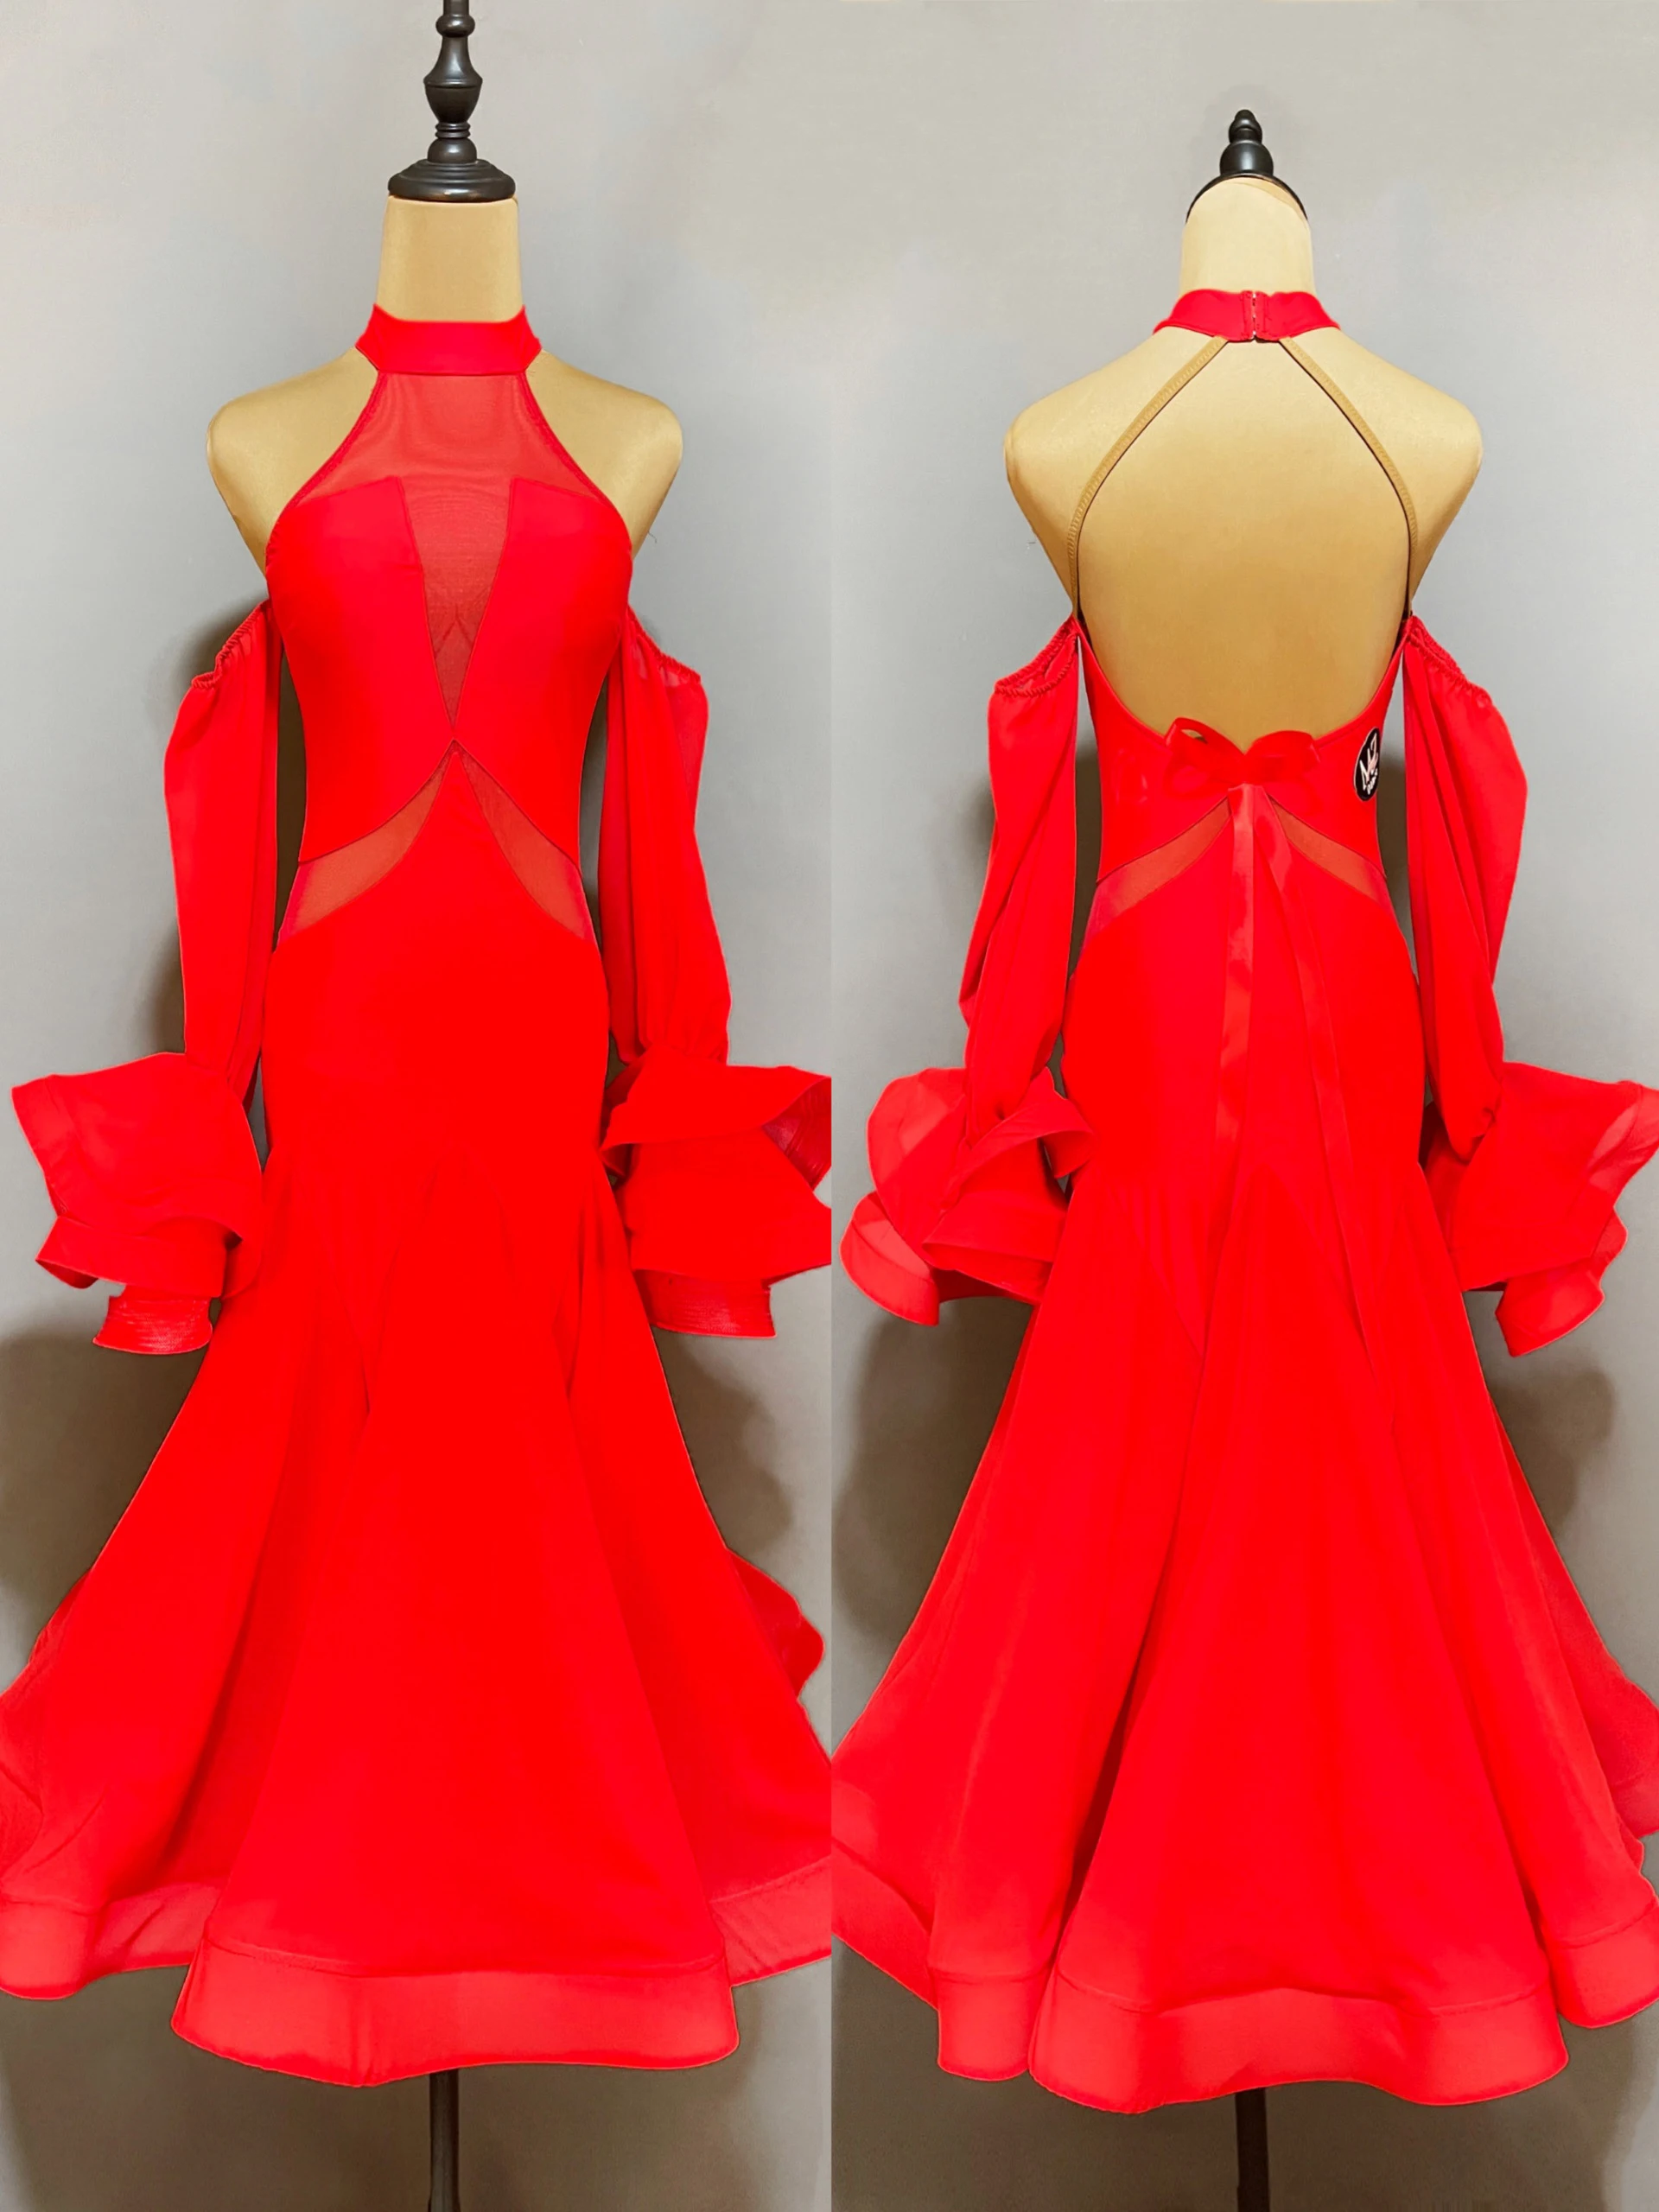 

Красное платье для бальных танцев, женское платье для выпускного вечера и соревнований, платье для вальса и лисы, костюм для представлений, сценическая одежда JL5661